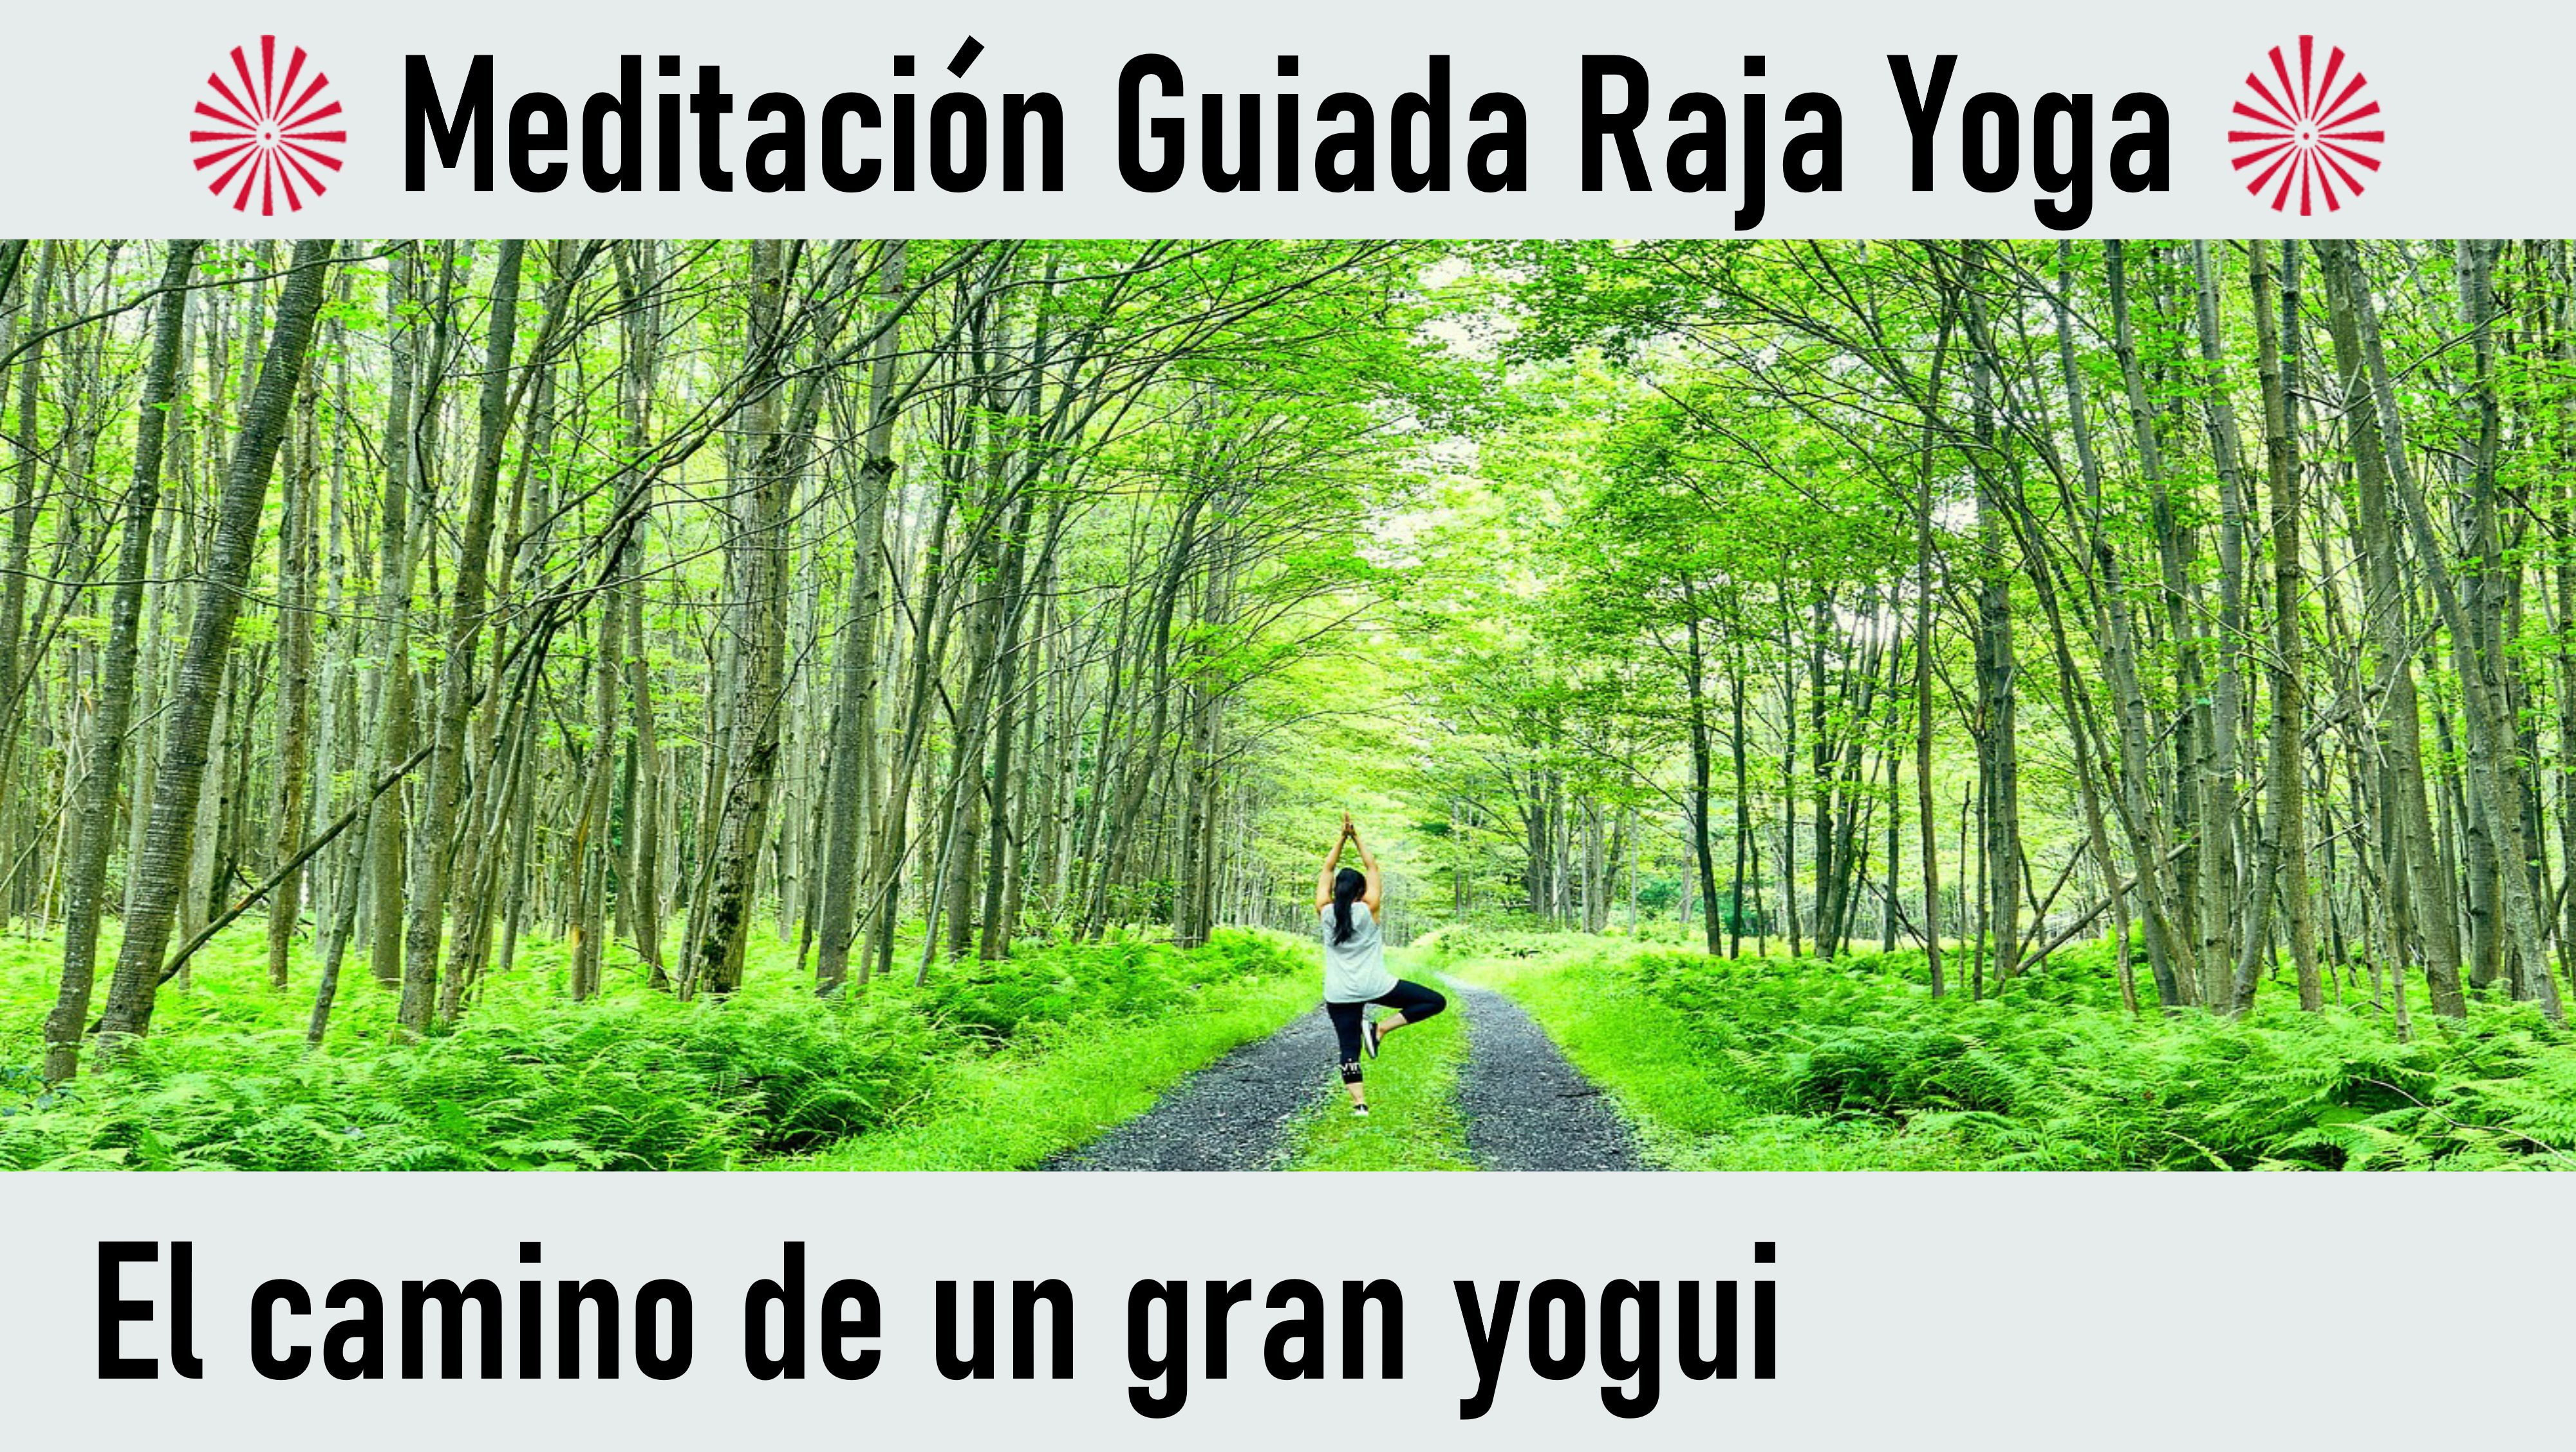 8 Septiembre 2020 Meditación guiada: El camino de un gran yogui